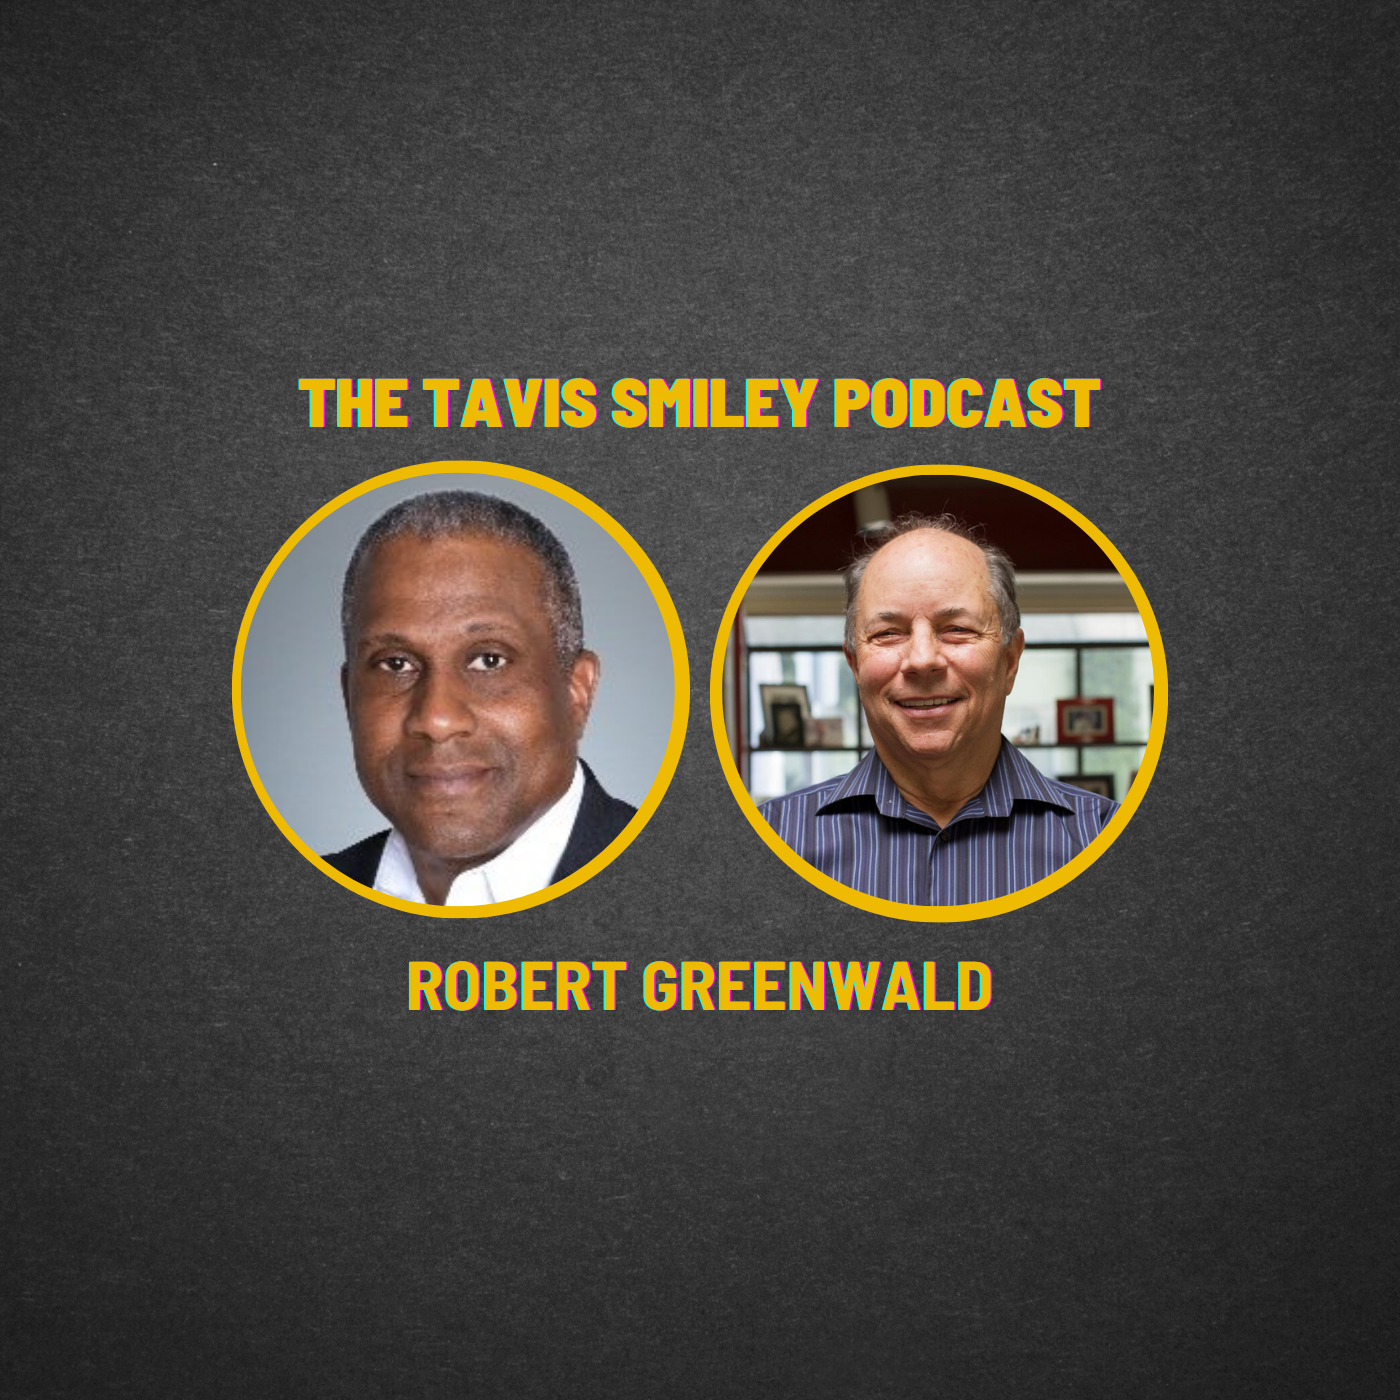 Robert Greenwald joins Tavis Smiley